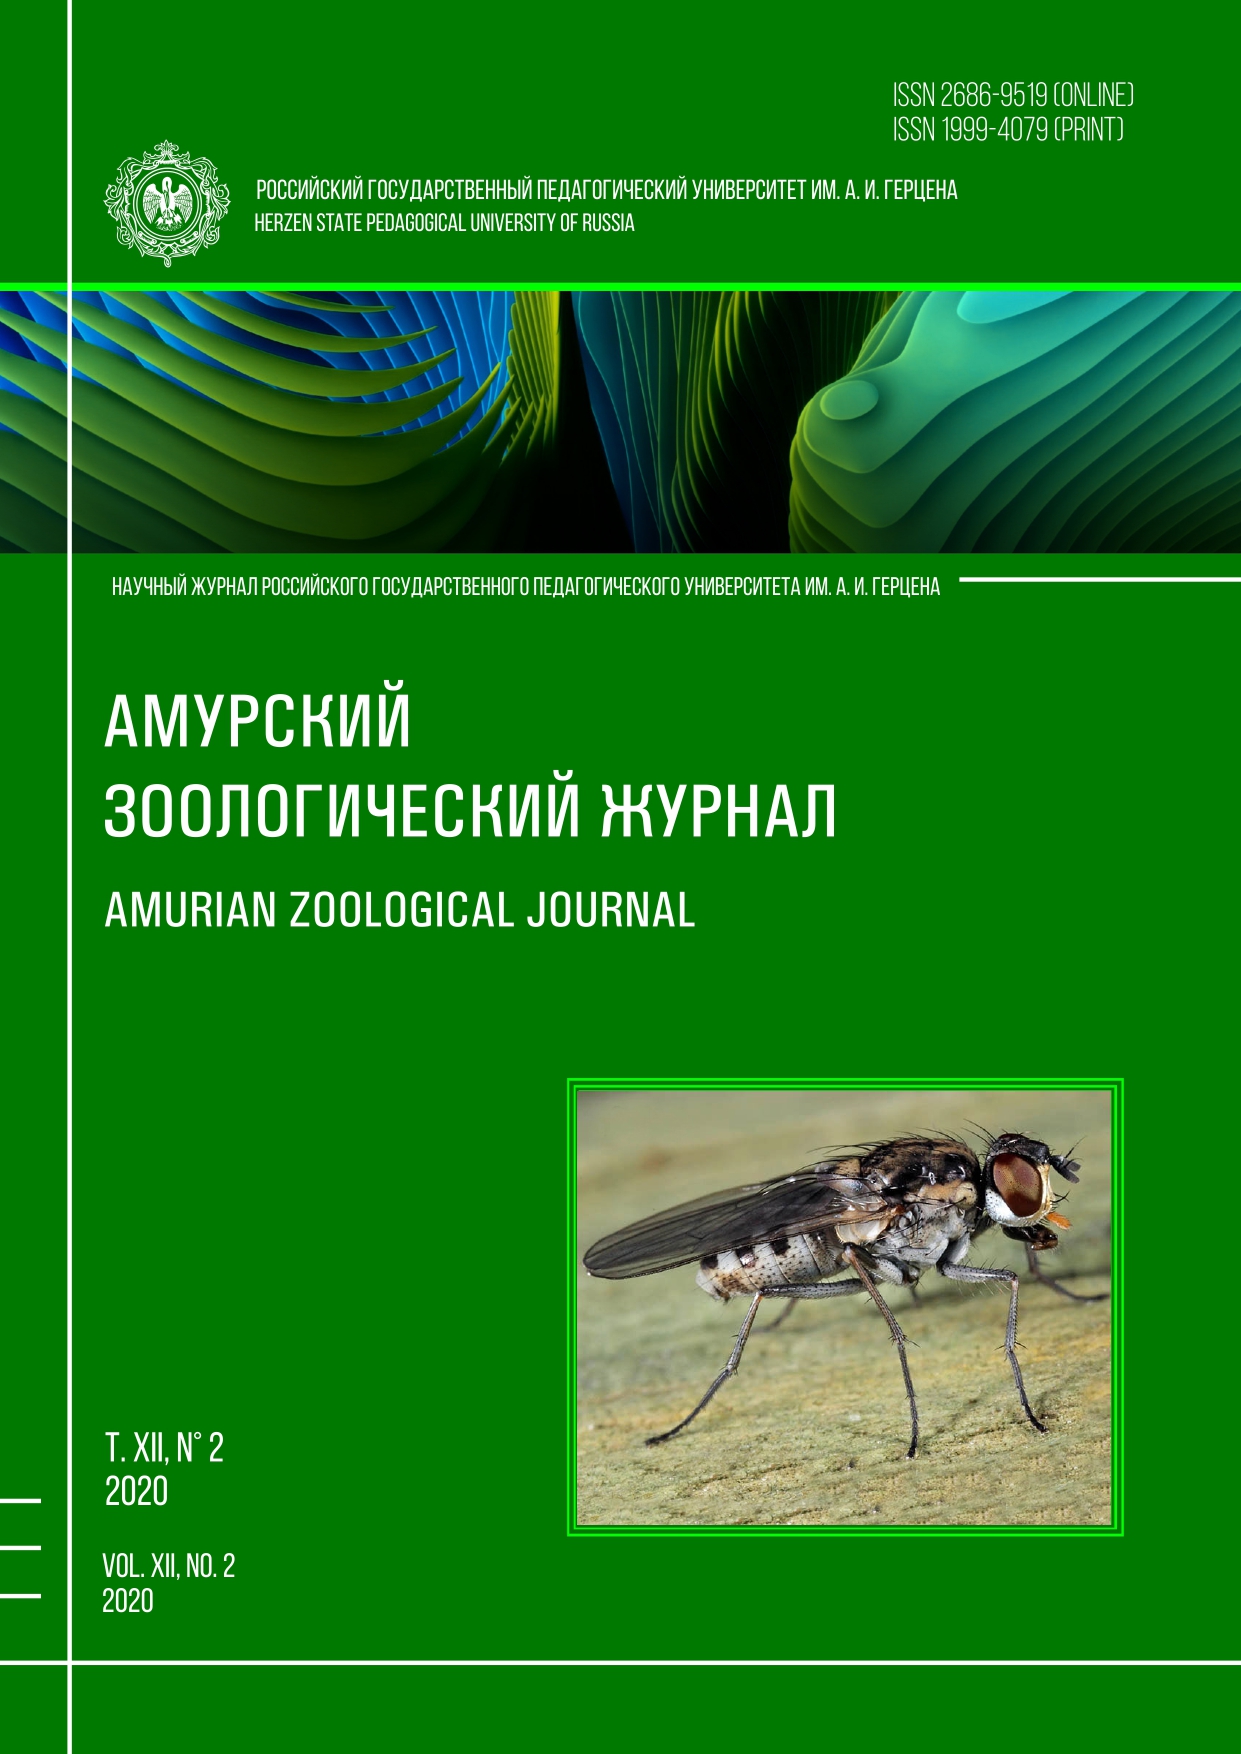 Обложка издания "Амурский зоологический журнал" (т. XII, № 2)